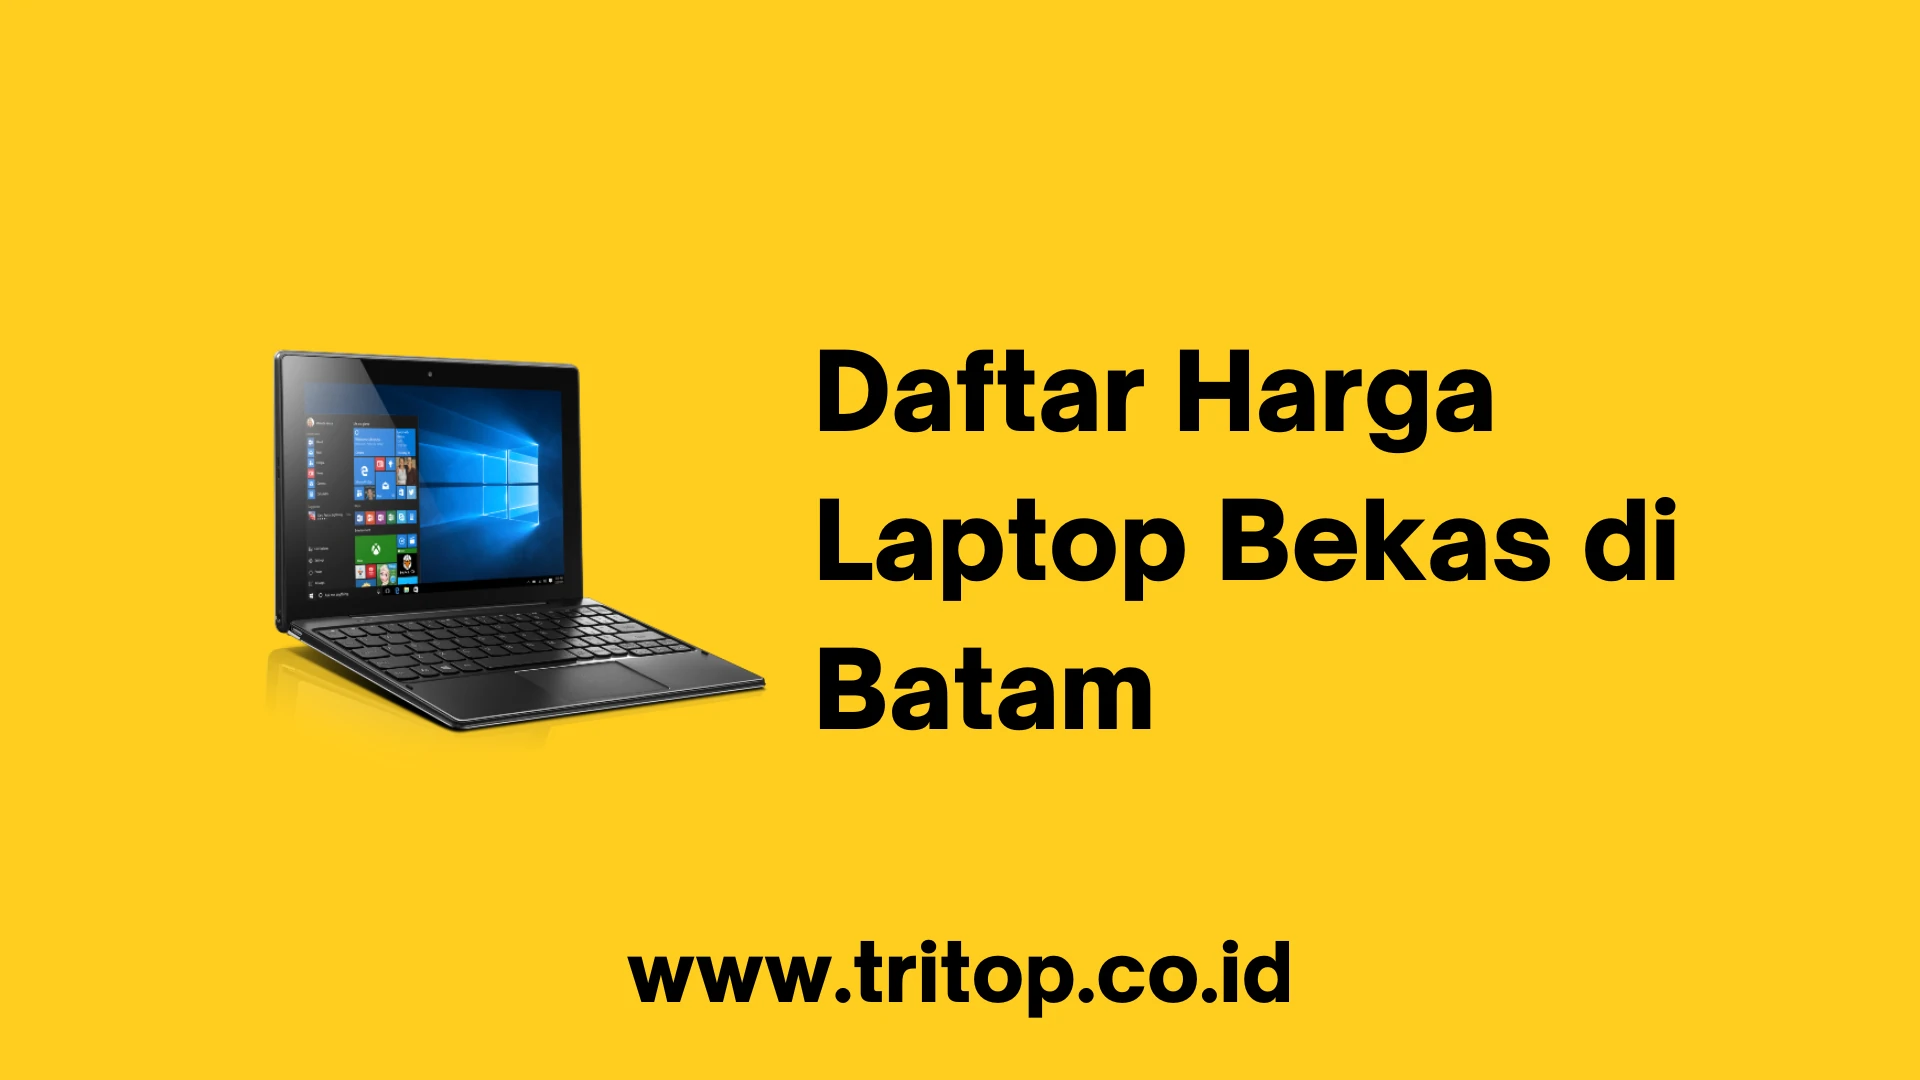 Daftar Harga Laptop Bekas di Batam